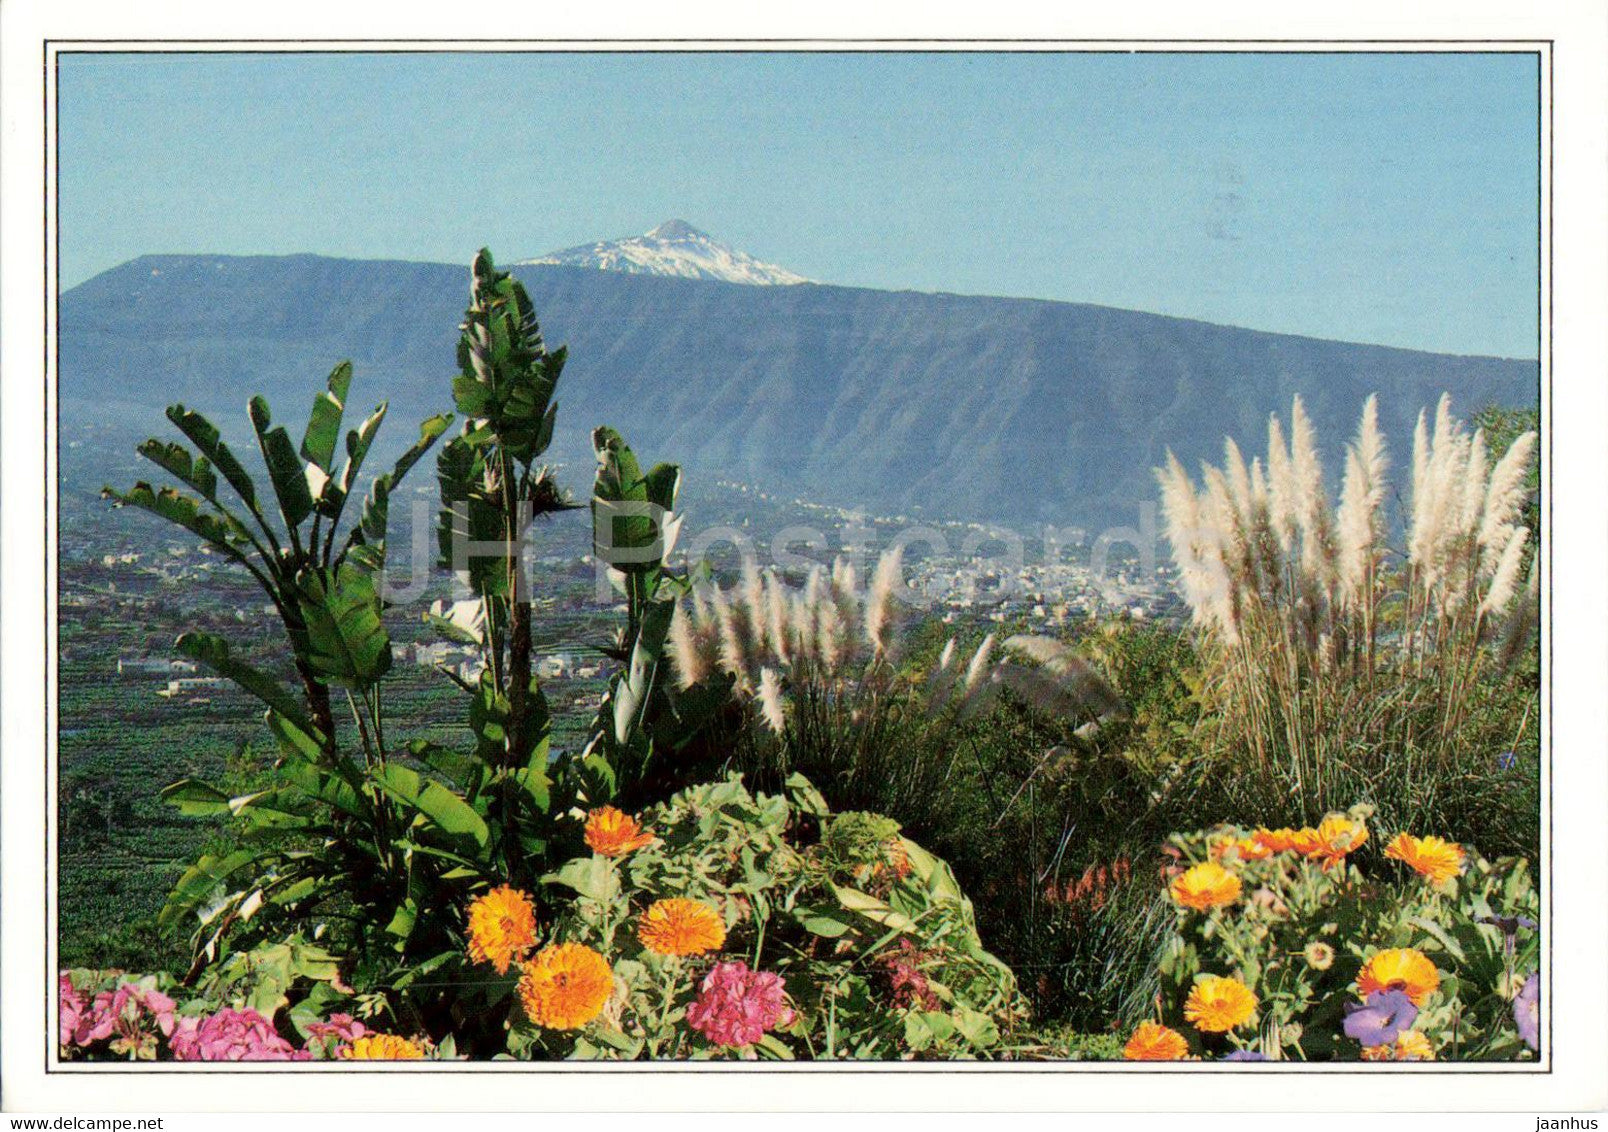 Paisaje del Teide - Puerto de la Cruz - Tenerife - Islas Canarias - 101 - 1996 - Spain - used - JH Postcards